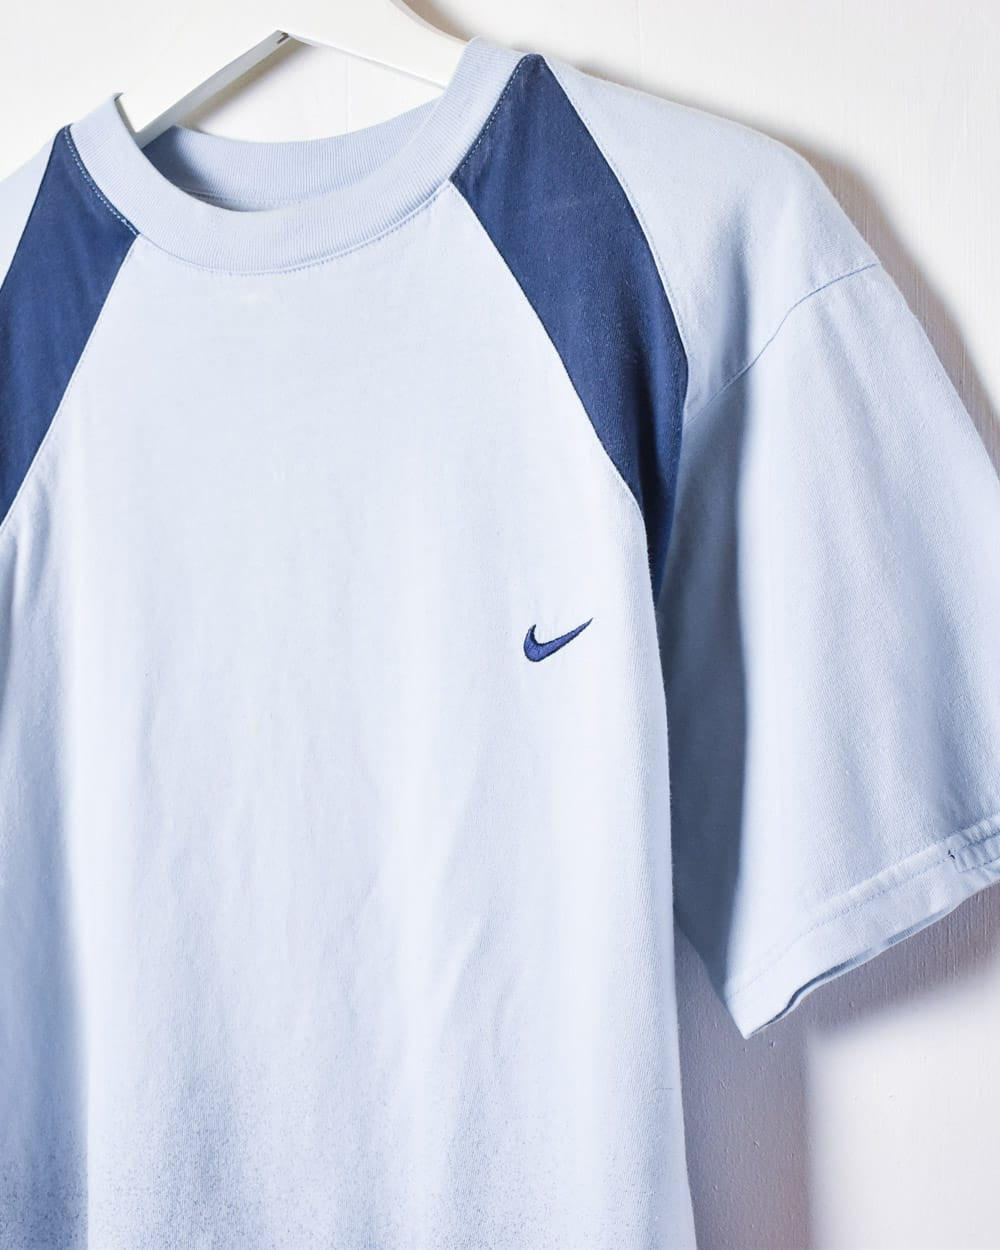 BabyBlue Nike T-Shirt - Medium Women's